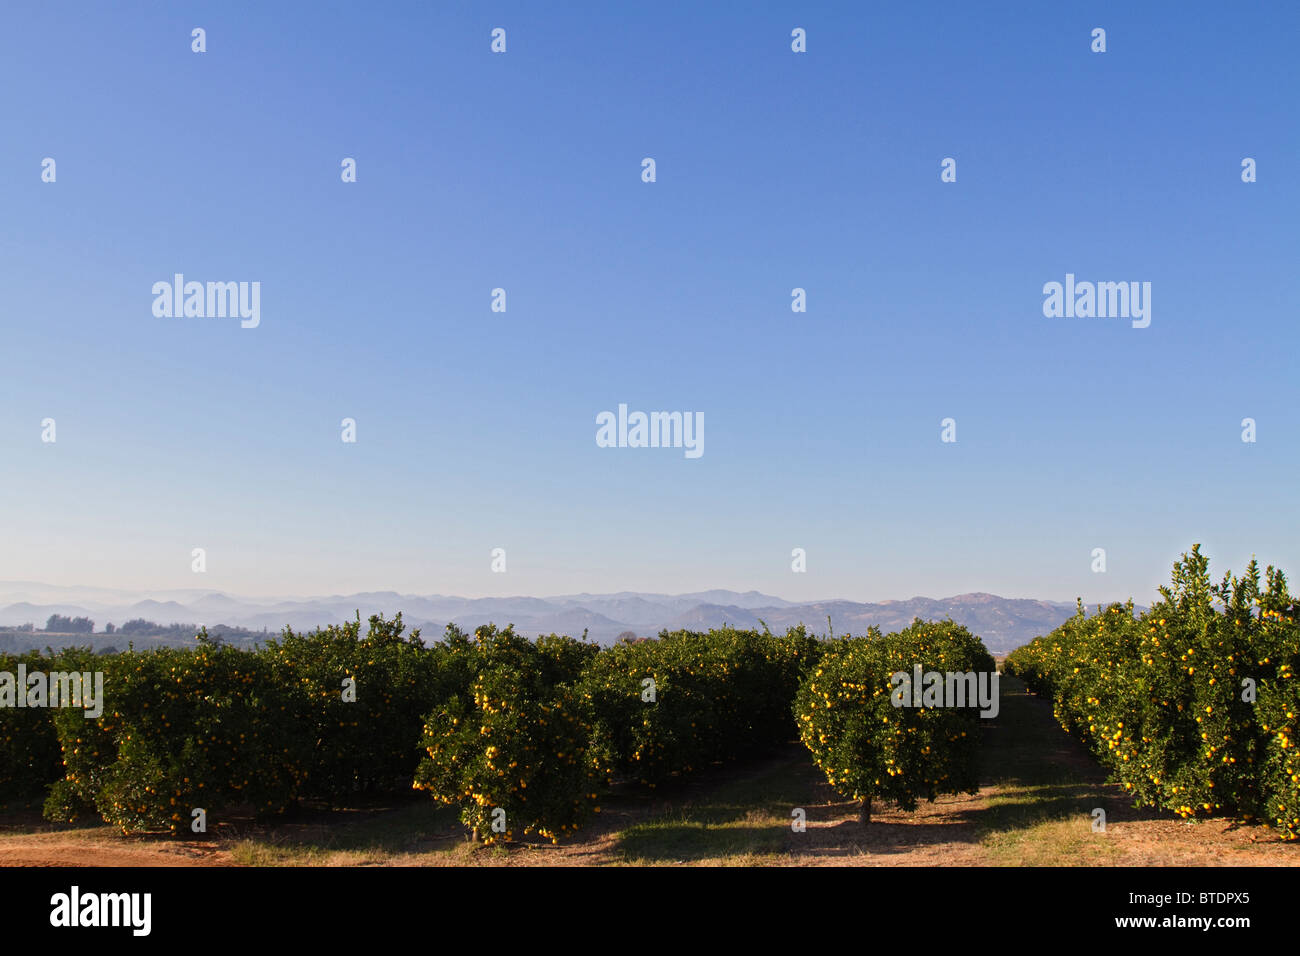 Vue panoramique d'un verger d'agrumes Lowveld avec fruits mûrs dans les arbres Banque D'Images